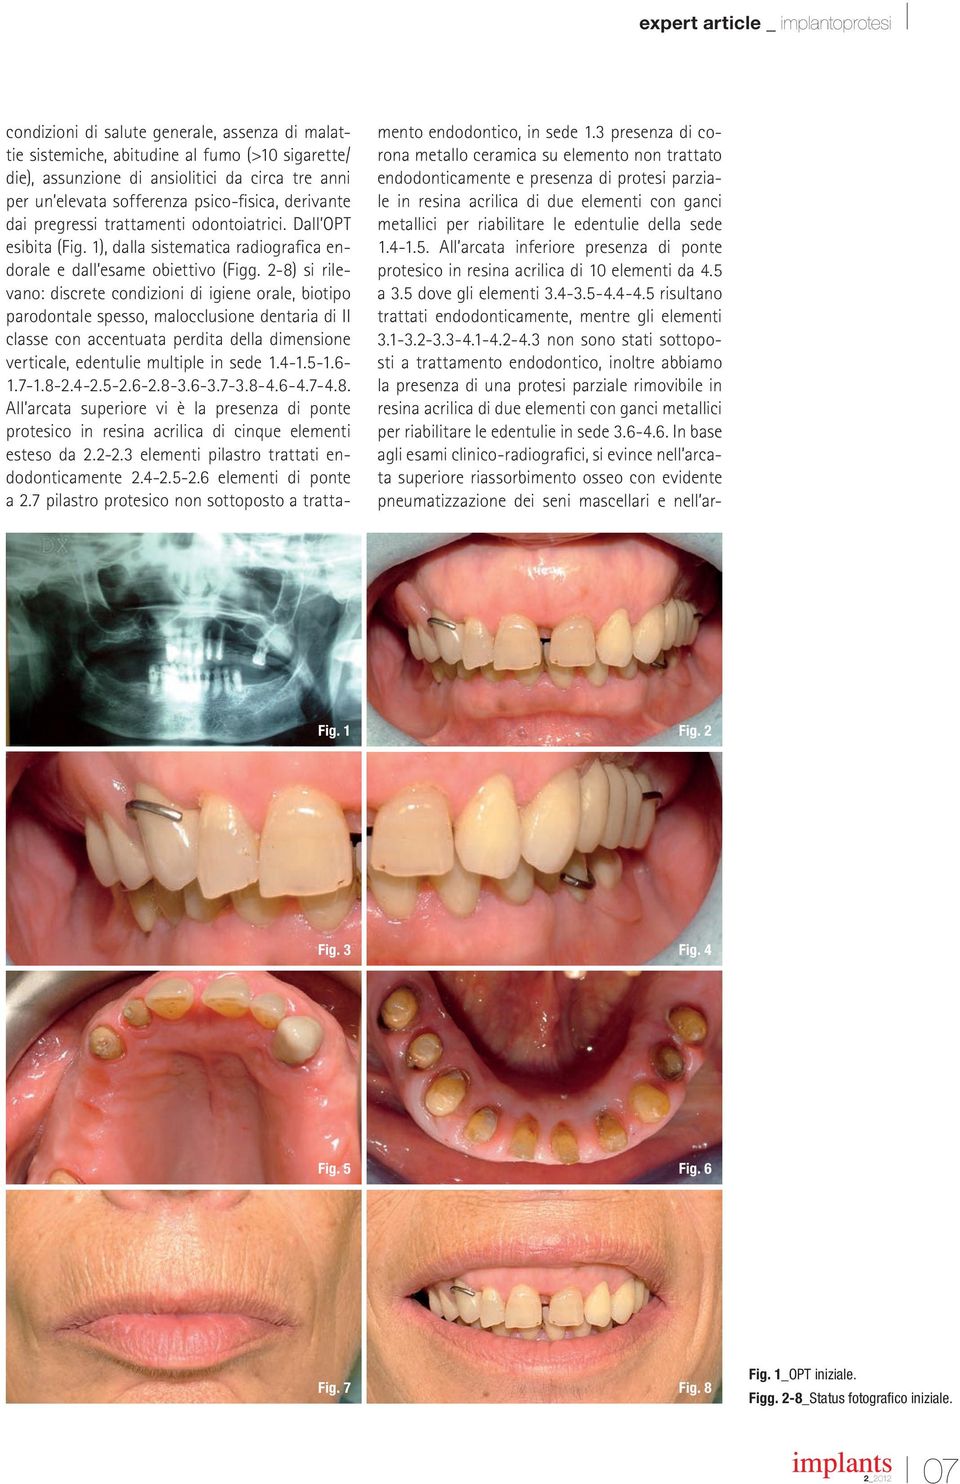 2-8) si rilevano: discrete condizioni di igiene orale, biotipo parodontale spesso, malocclusione dentaria di II classe con accentuata perdita della dimensione verticale, edentulie multiple in sede 1.